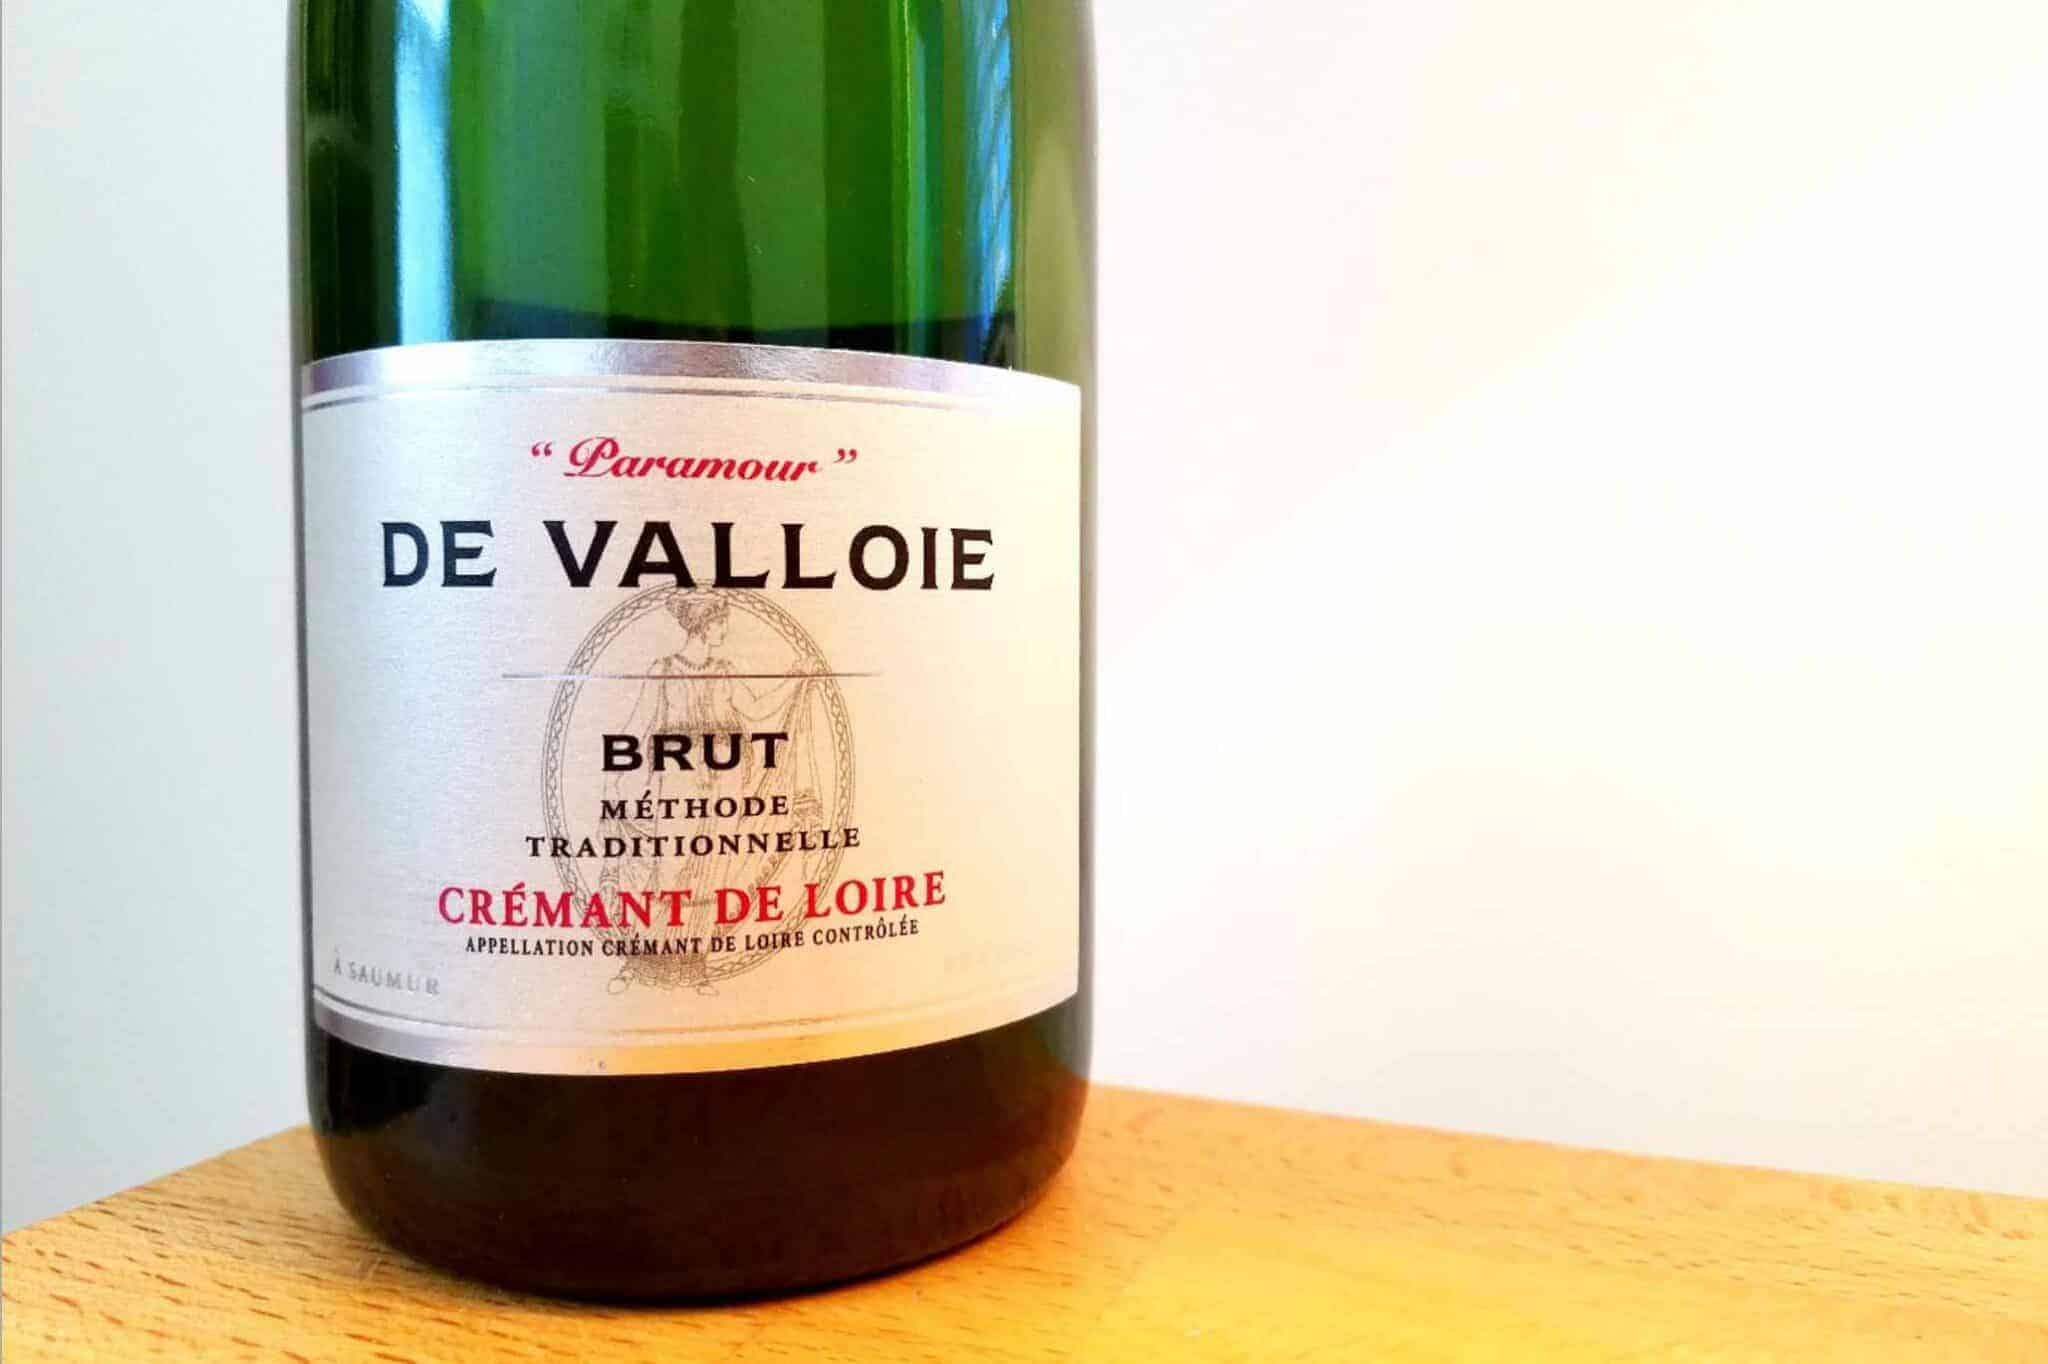 De-Valloire-Cremant-de-Loire-‘Paramour-Methode-Traditionnelle-Brut